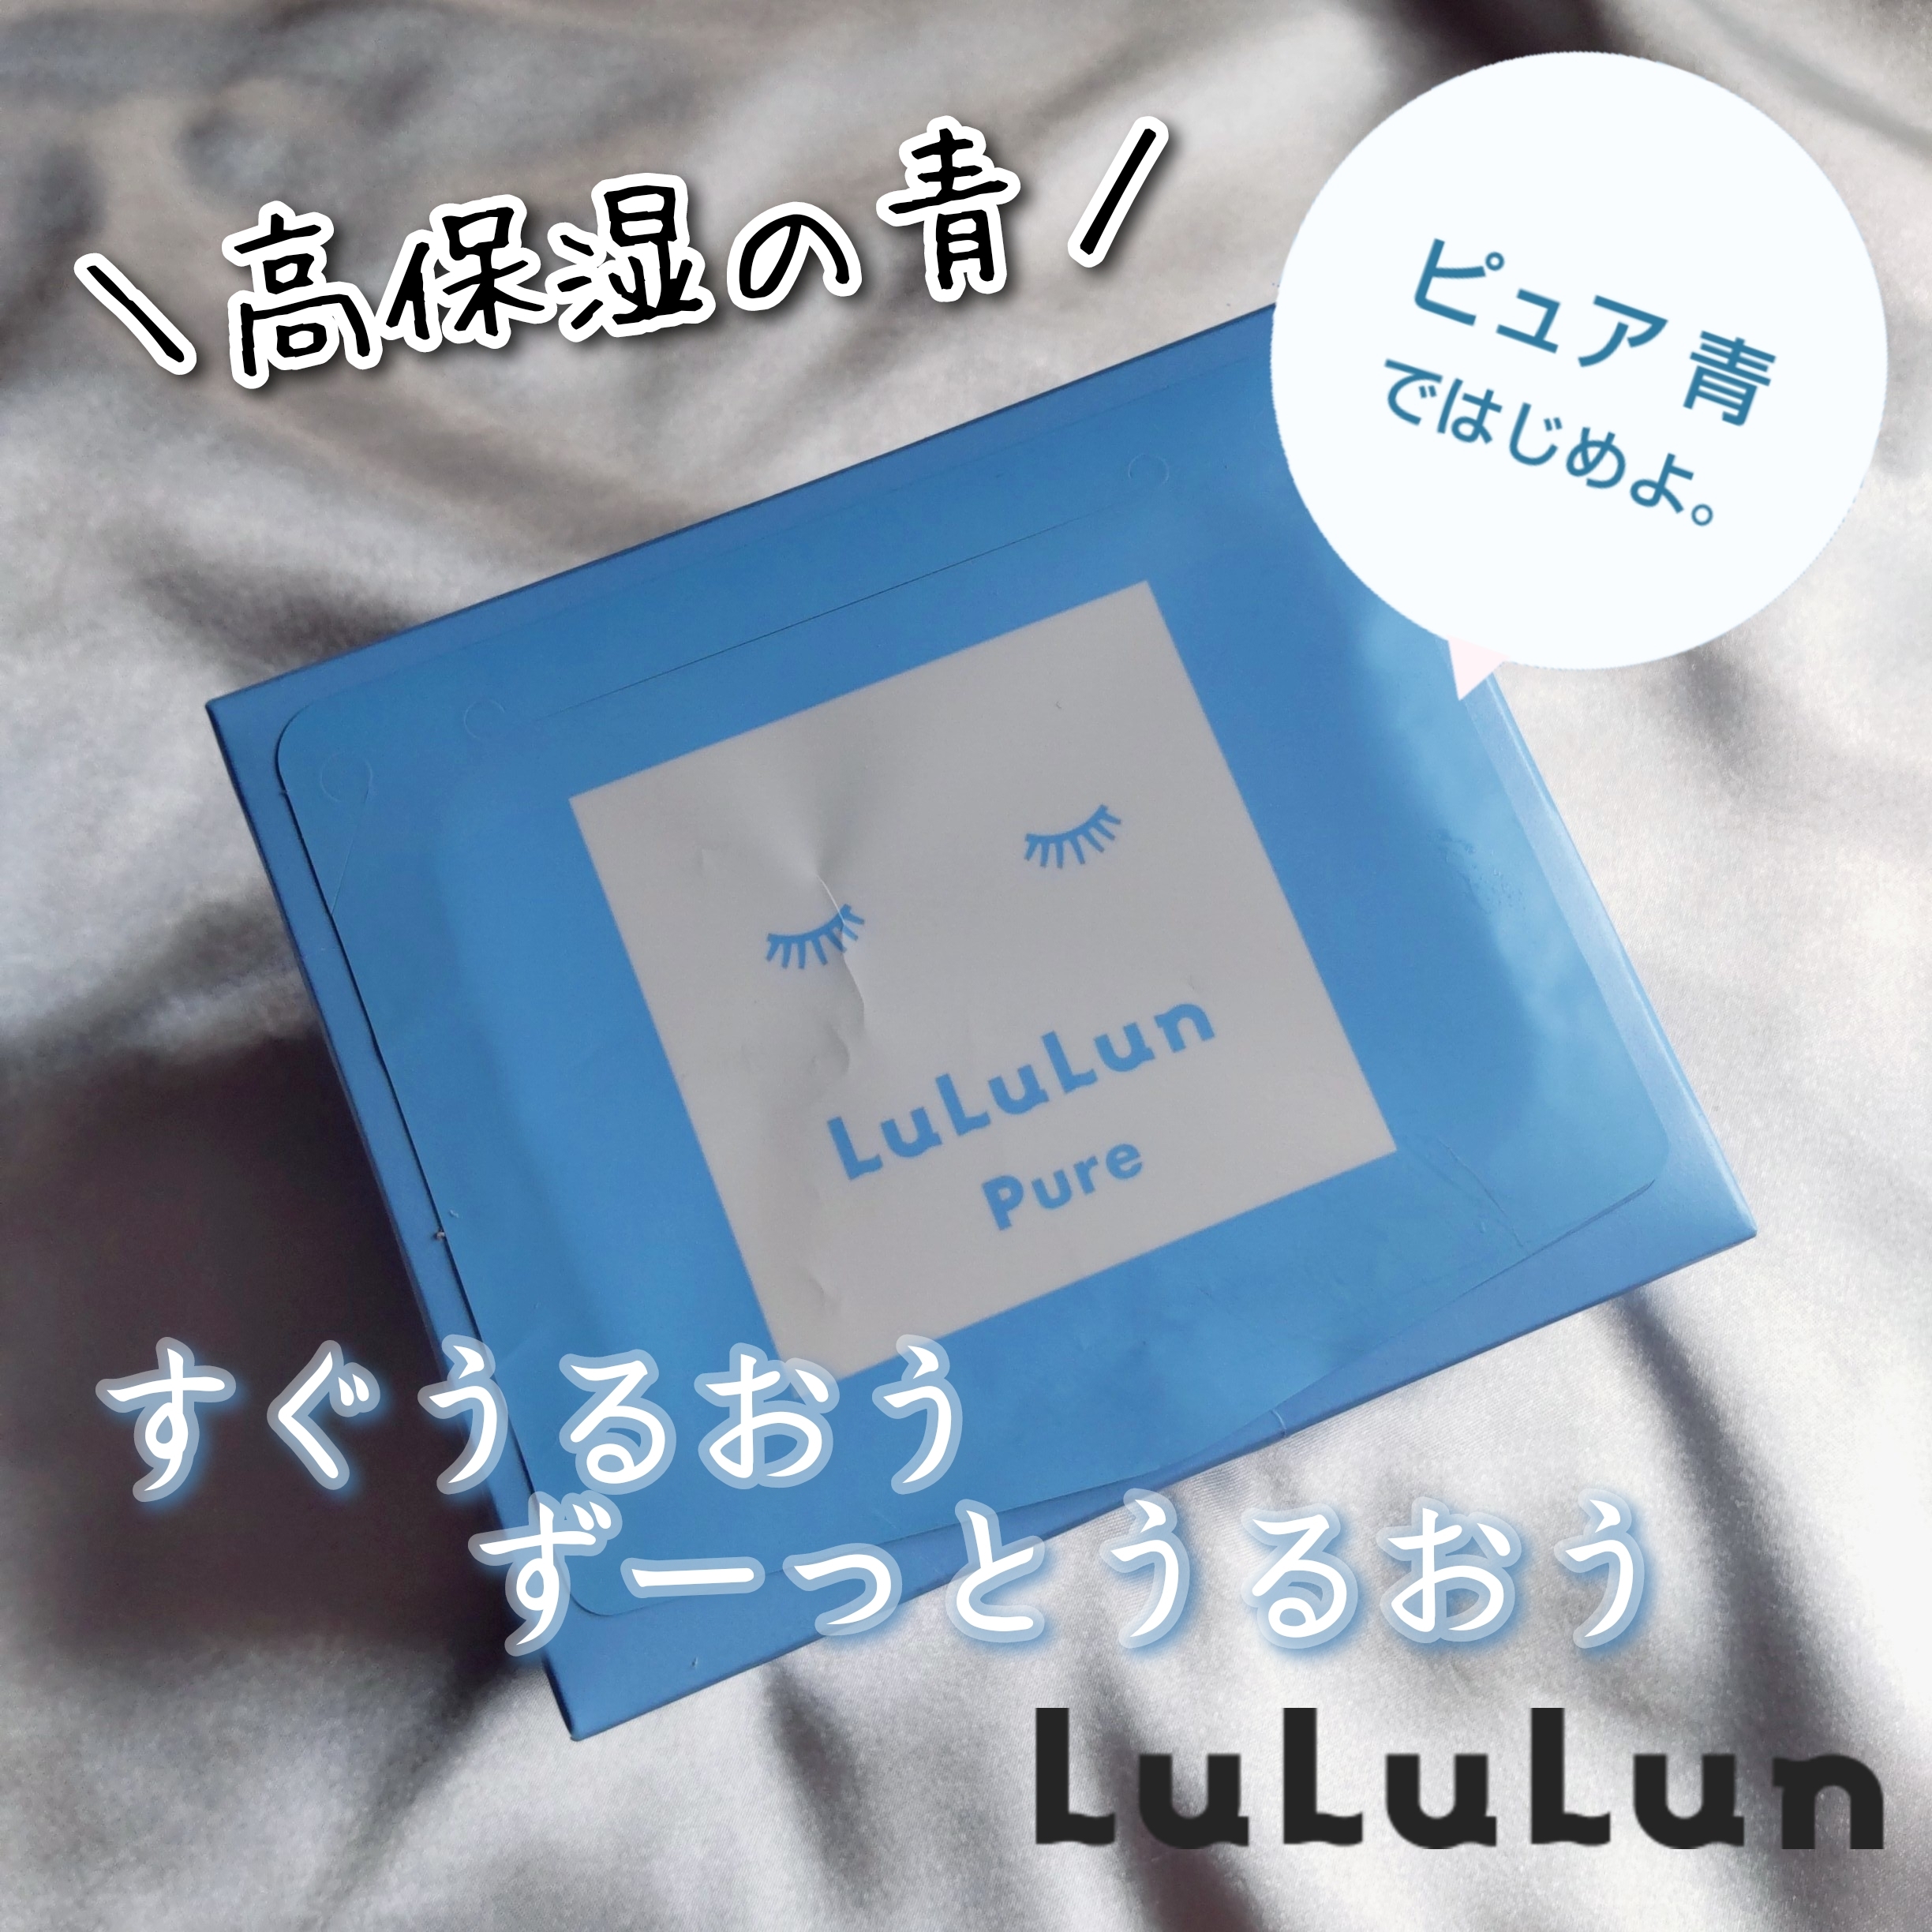 Lululun/ルルルンピュア 青 モイストを使ったまるもふさんのクチコミ画像1